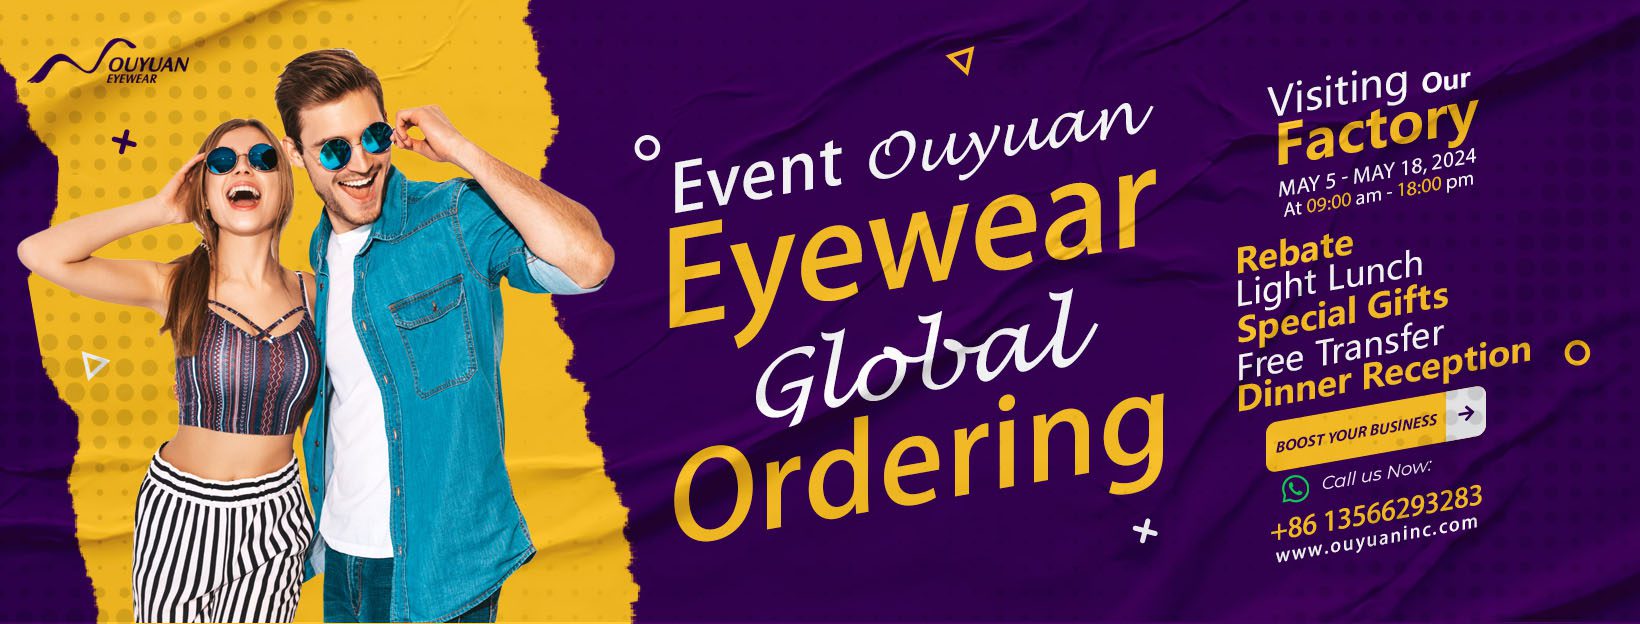 Optical Procurement Activities, Eyewear Ordering